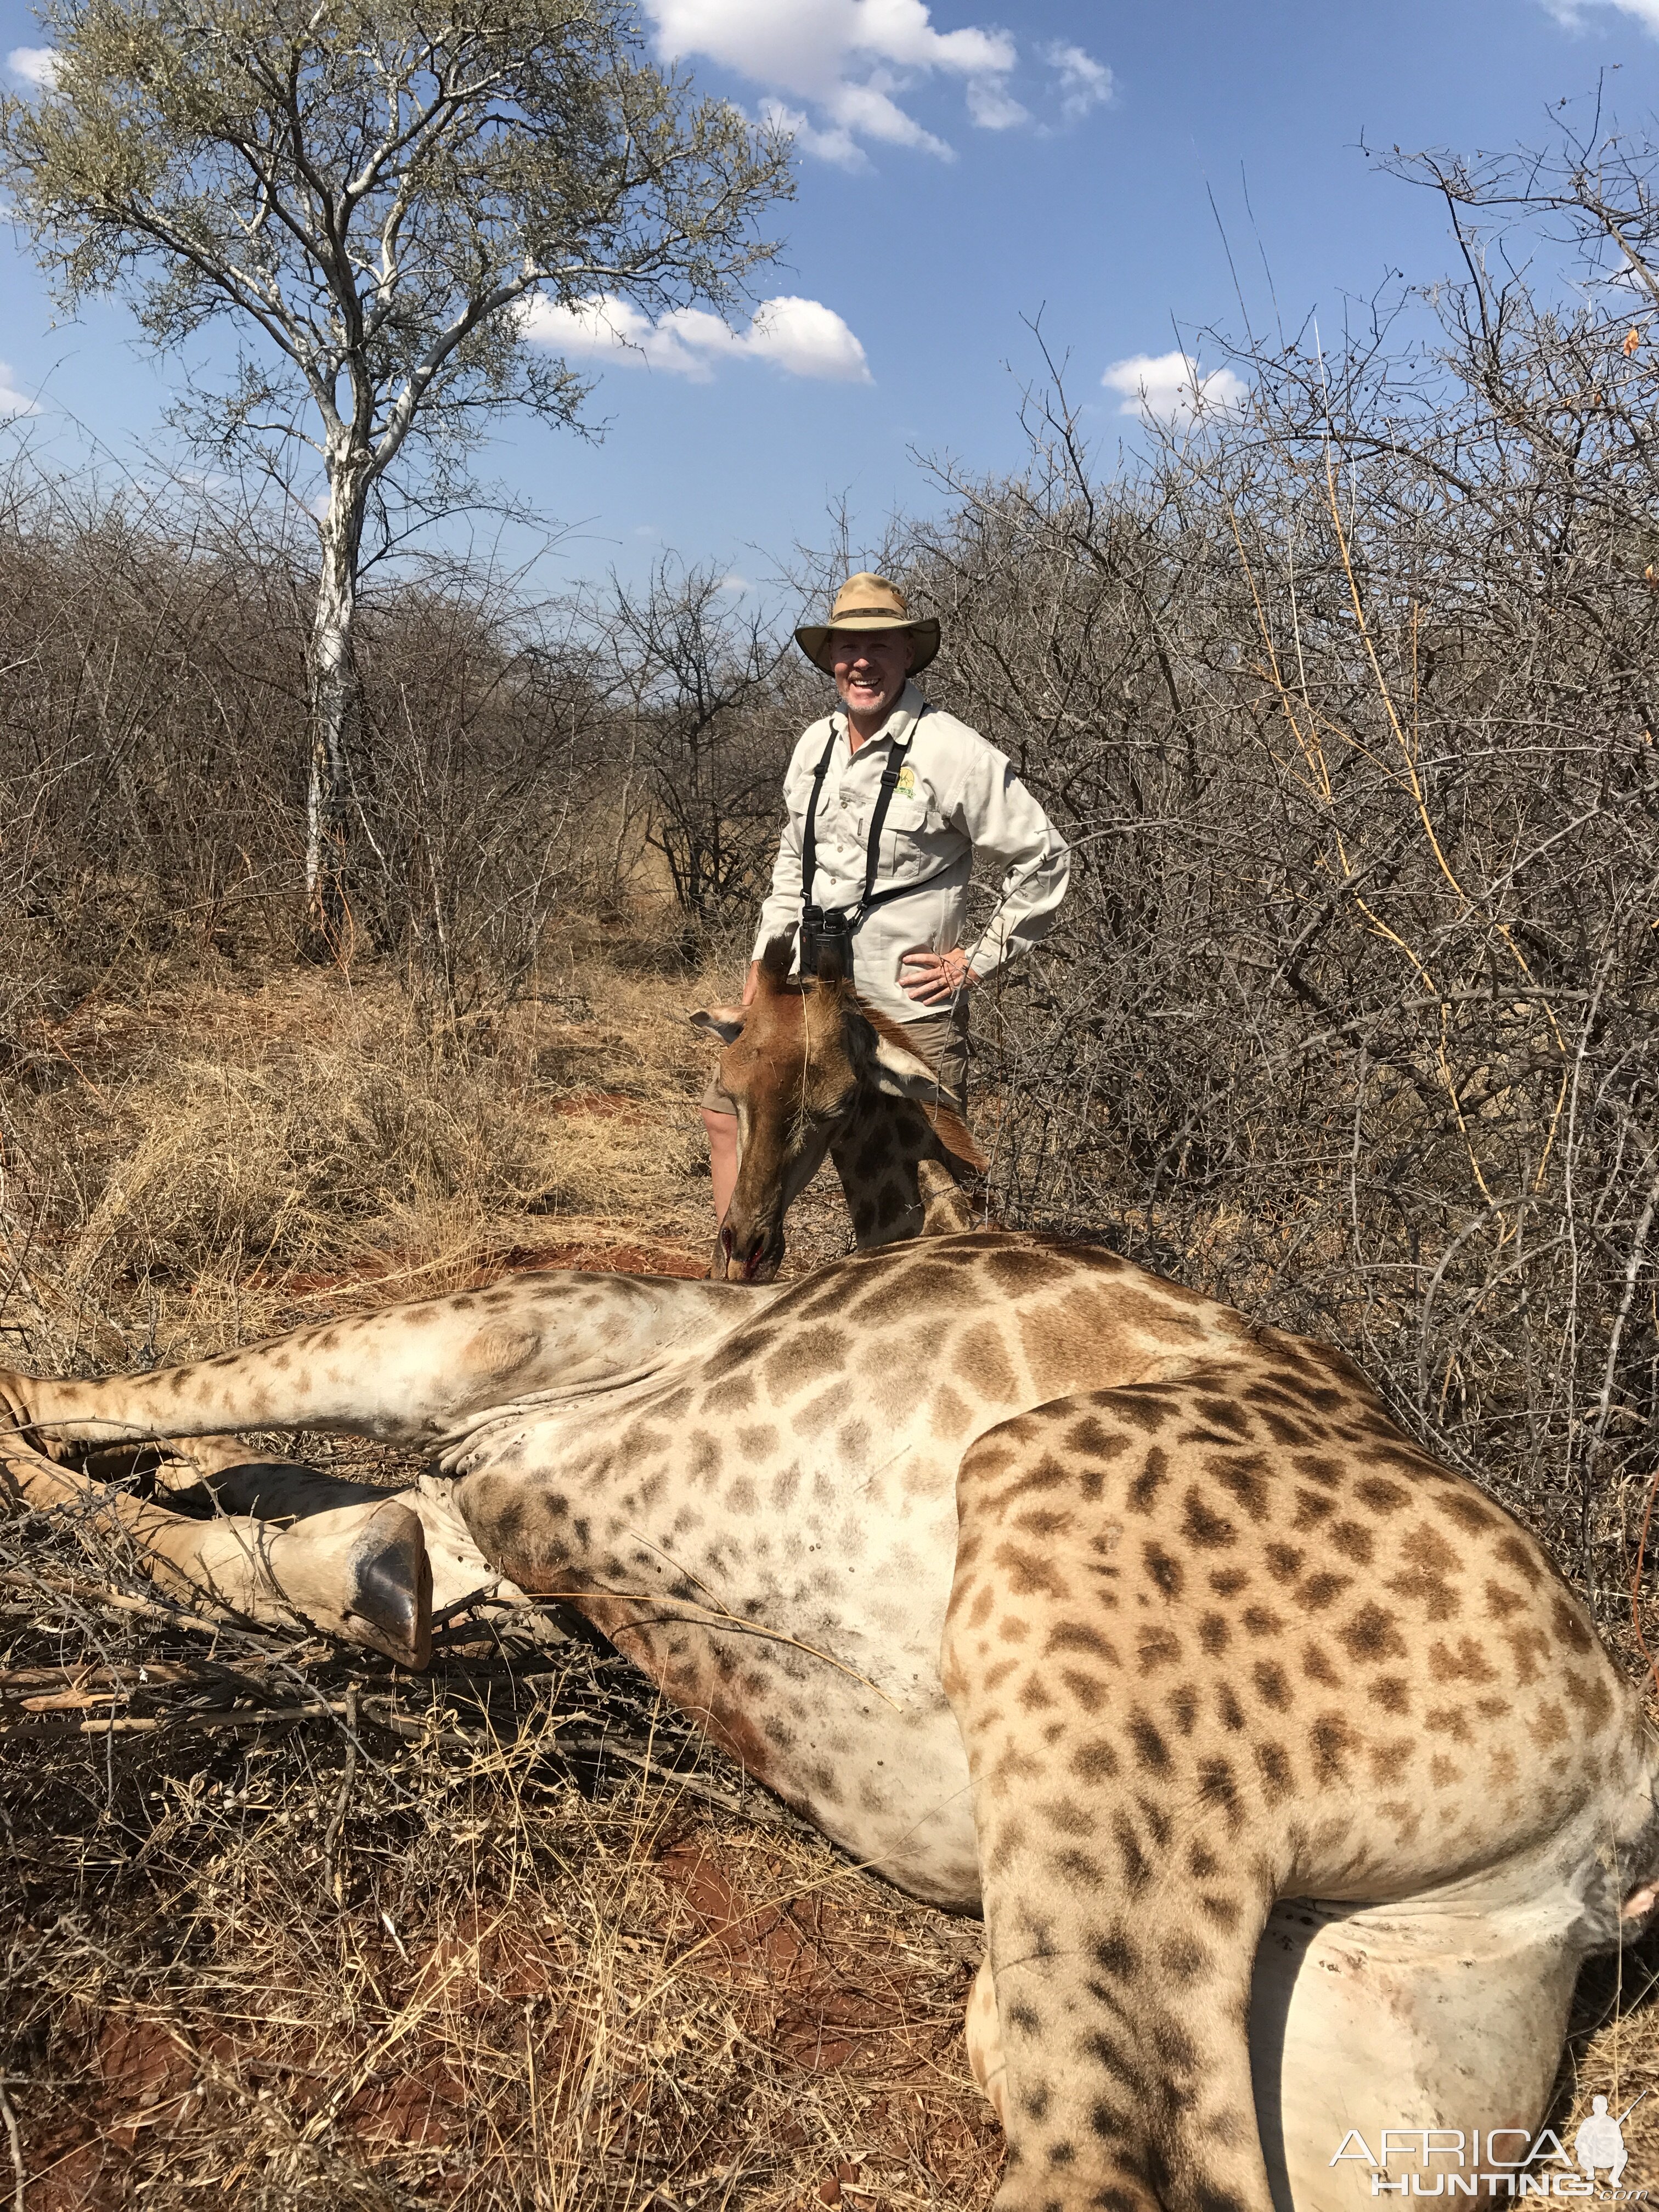 Hunt Giraffe in South Africa